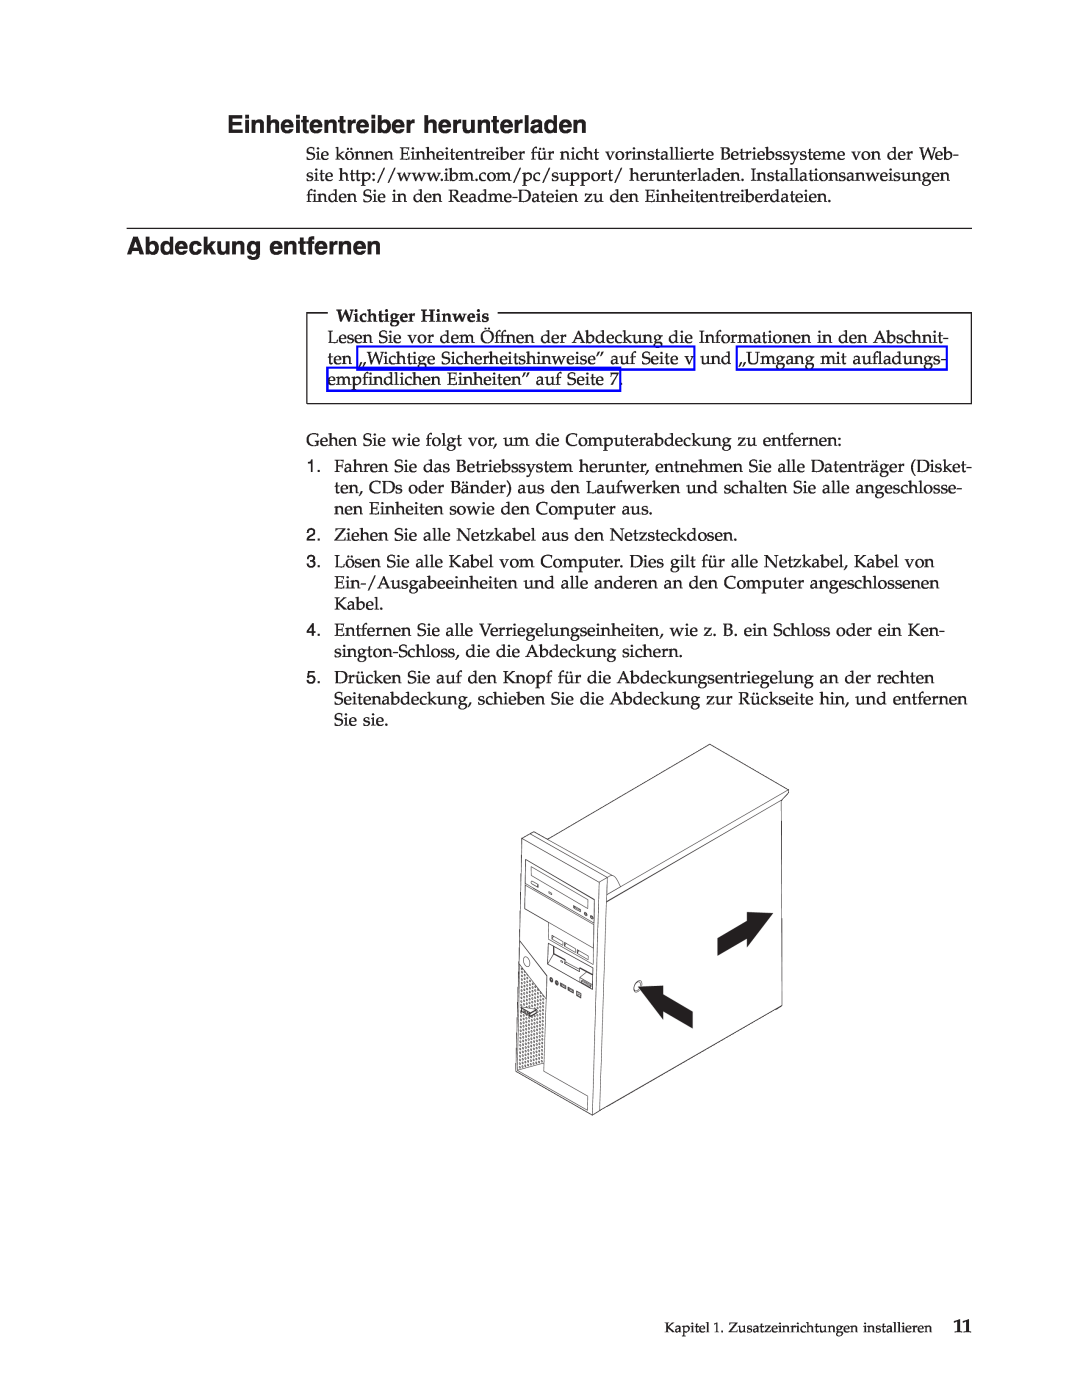 IBM 9213, 9212 manual Einheitentreiber herunterladen, Abdeckung entfernen, Wichtiger Hinweis 